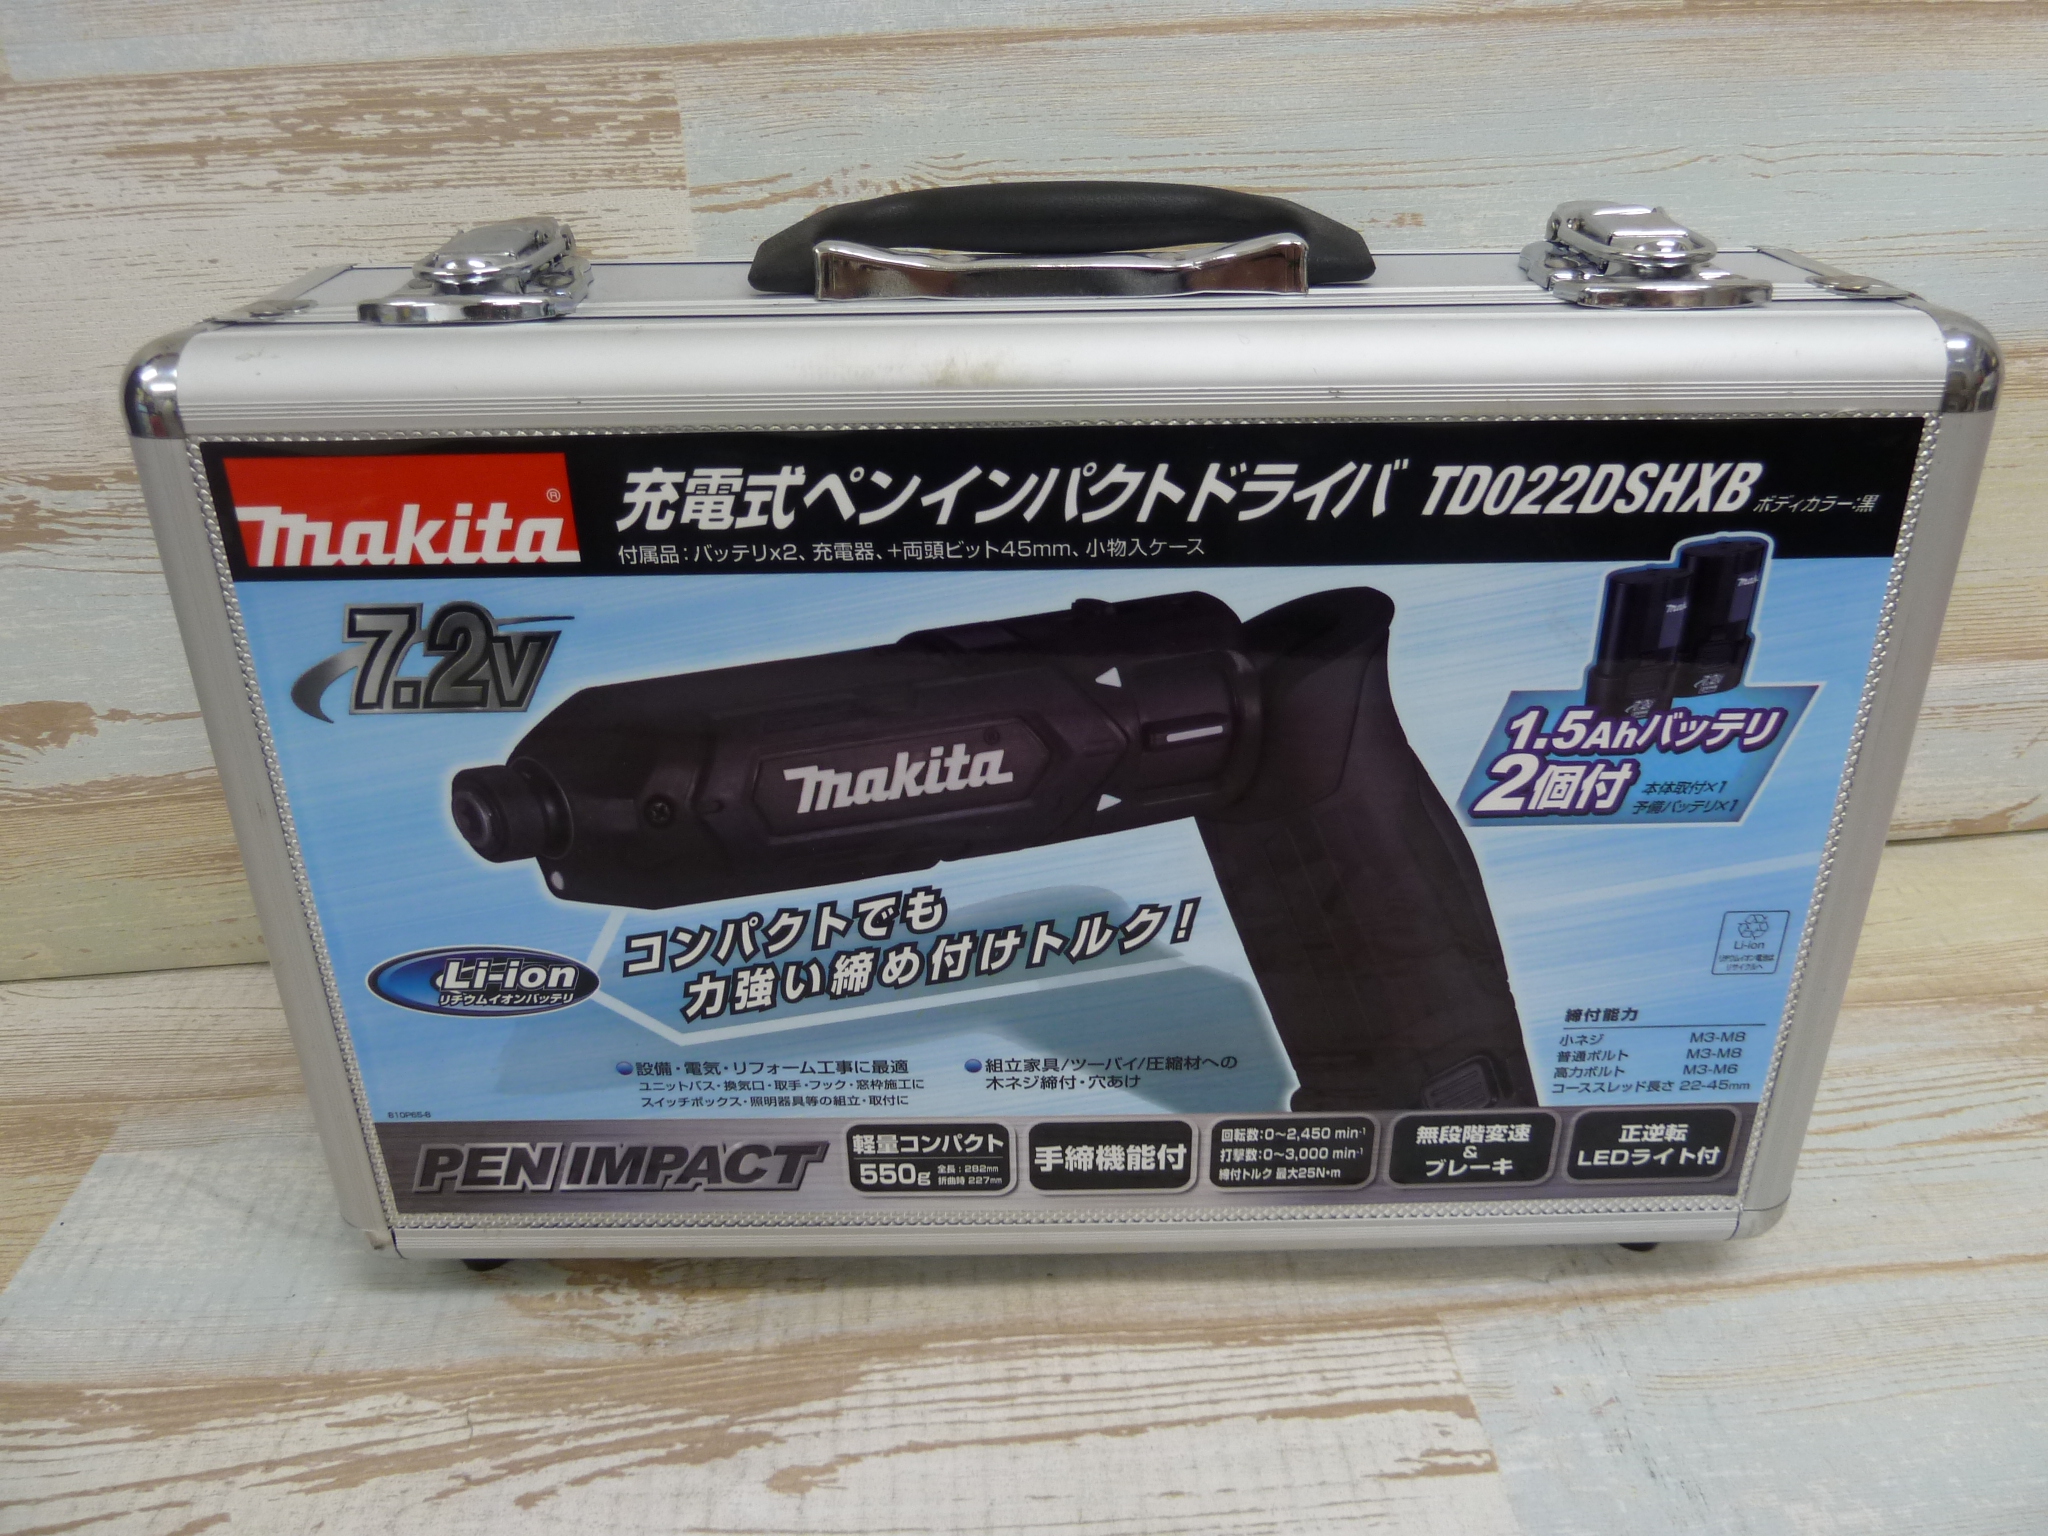 MAKITA（マキタ） 充電式ペンインパクトドライバ TD022DSHX の買取 | 電動工具買取、工具買取なら『工具BOX（ツールボックス）』